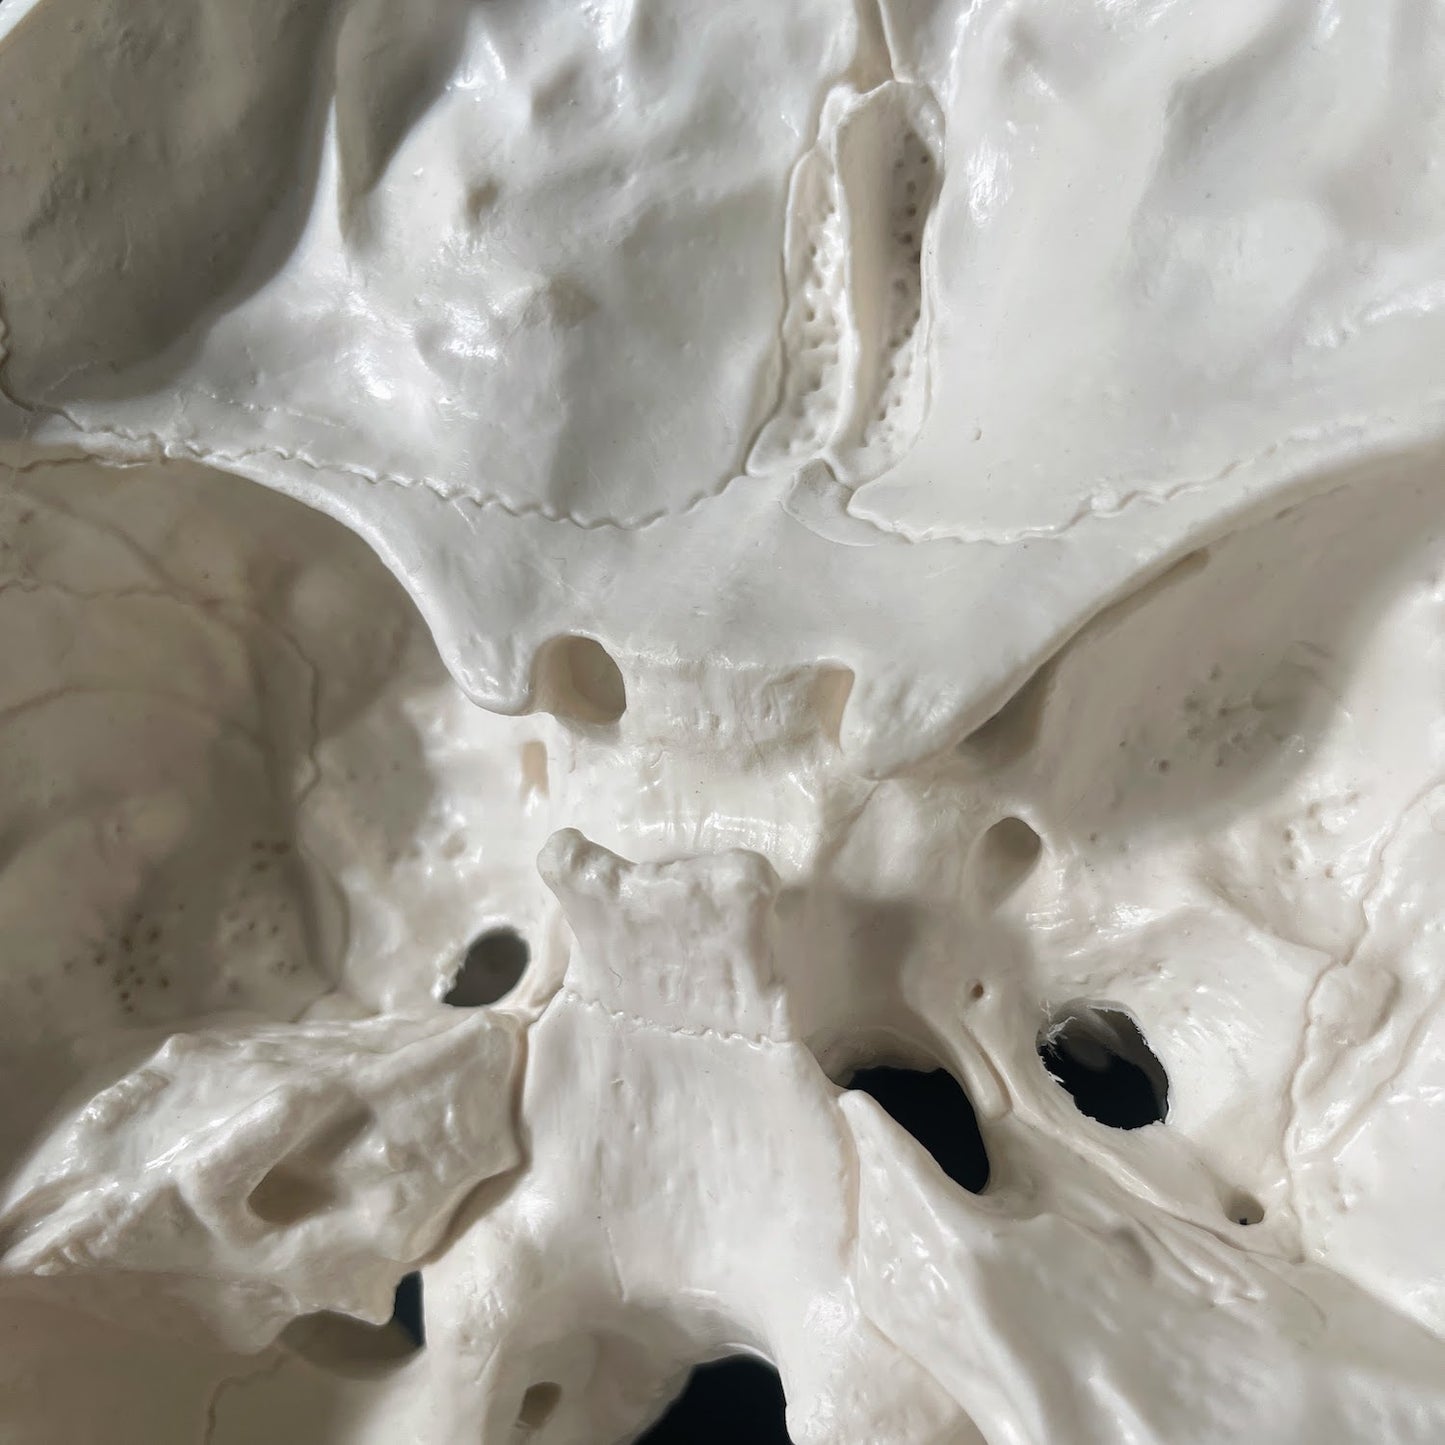 Anatomisk kraniemodel i voksen størrelse II